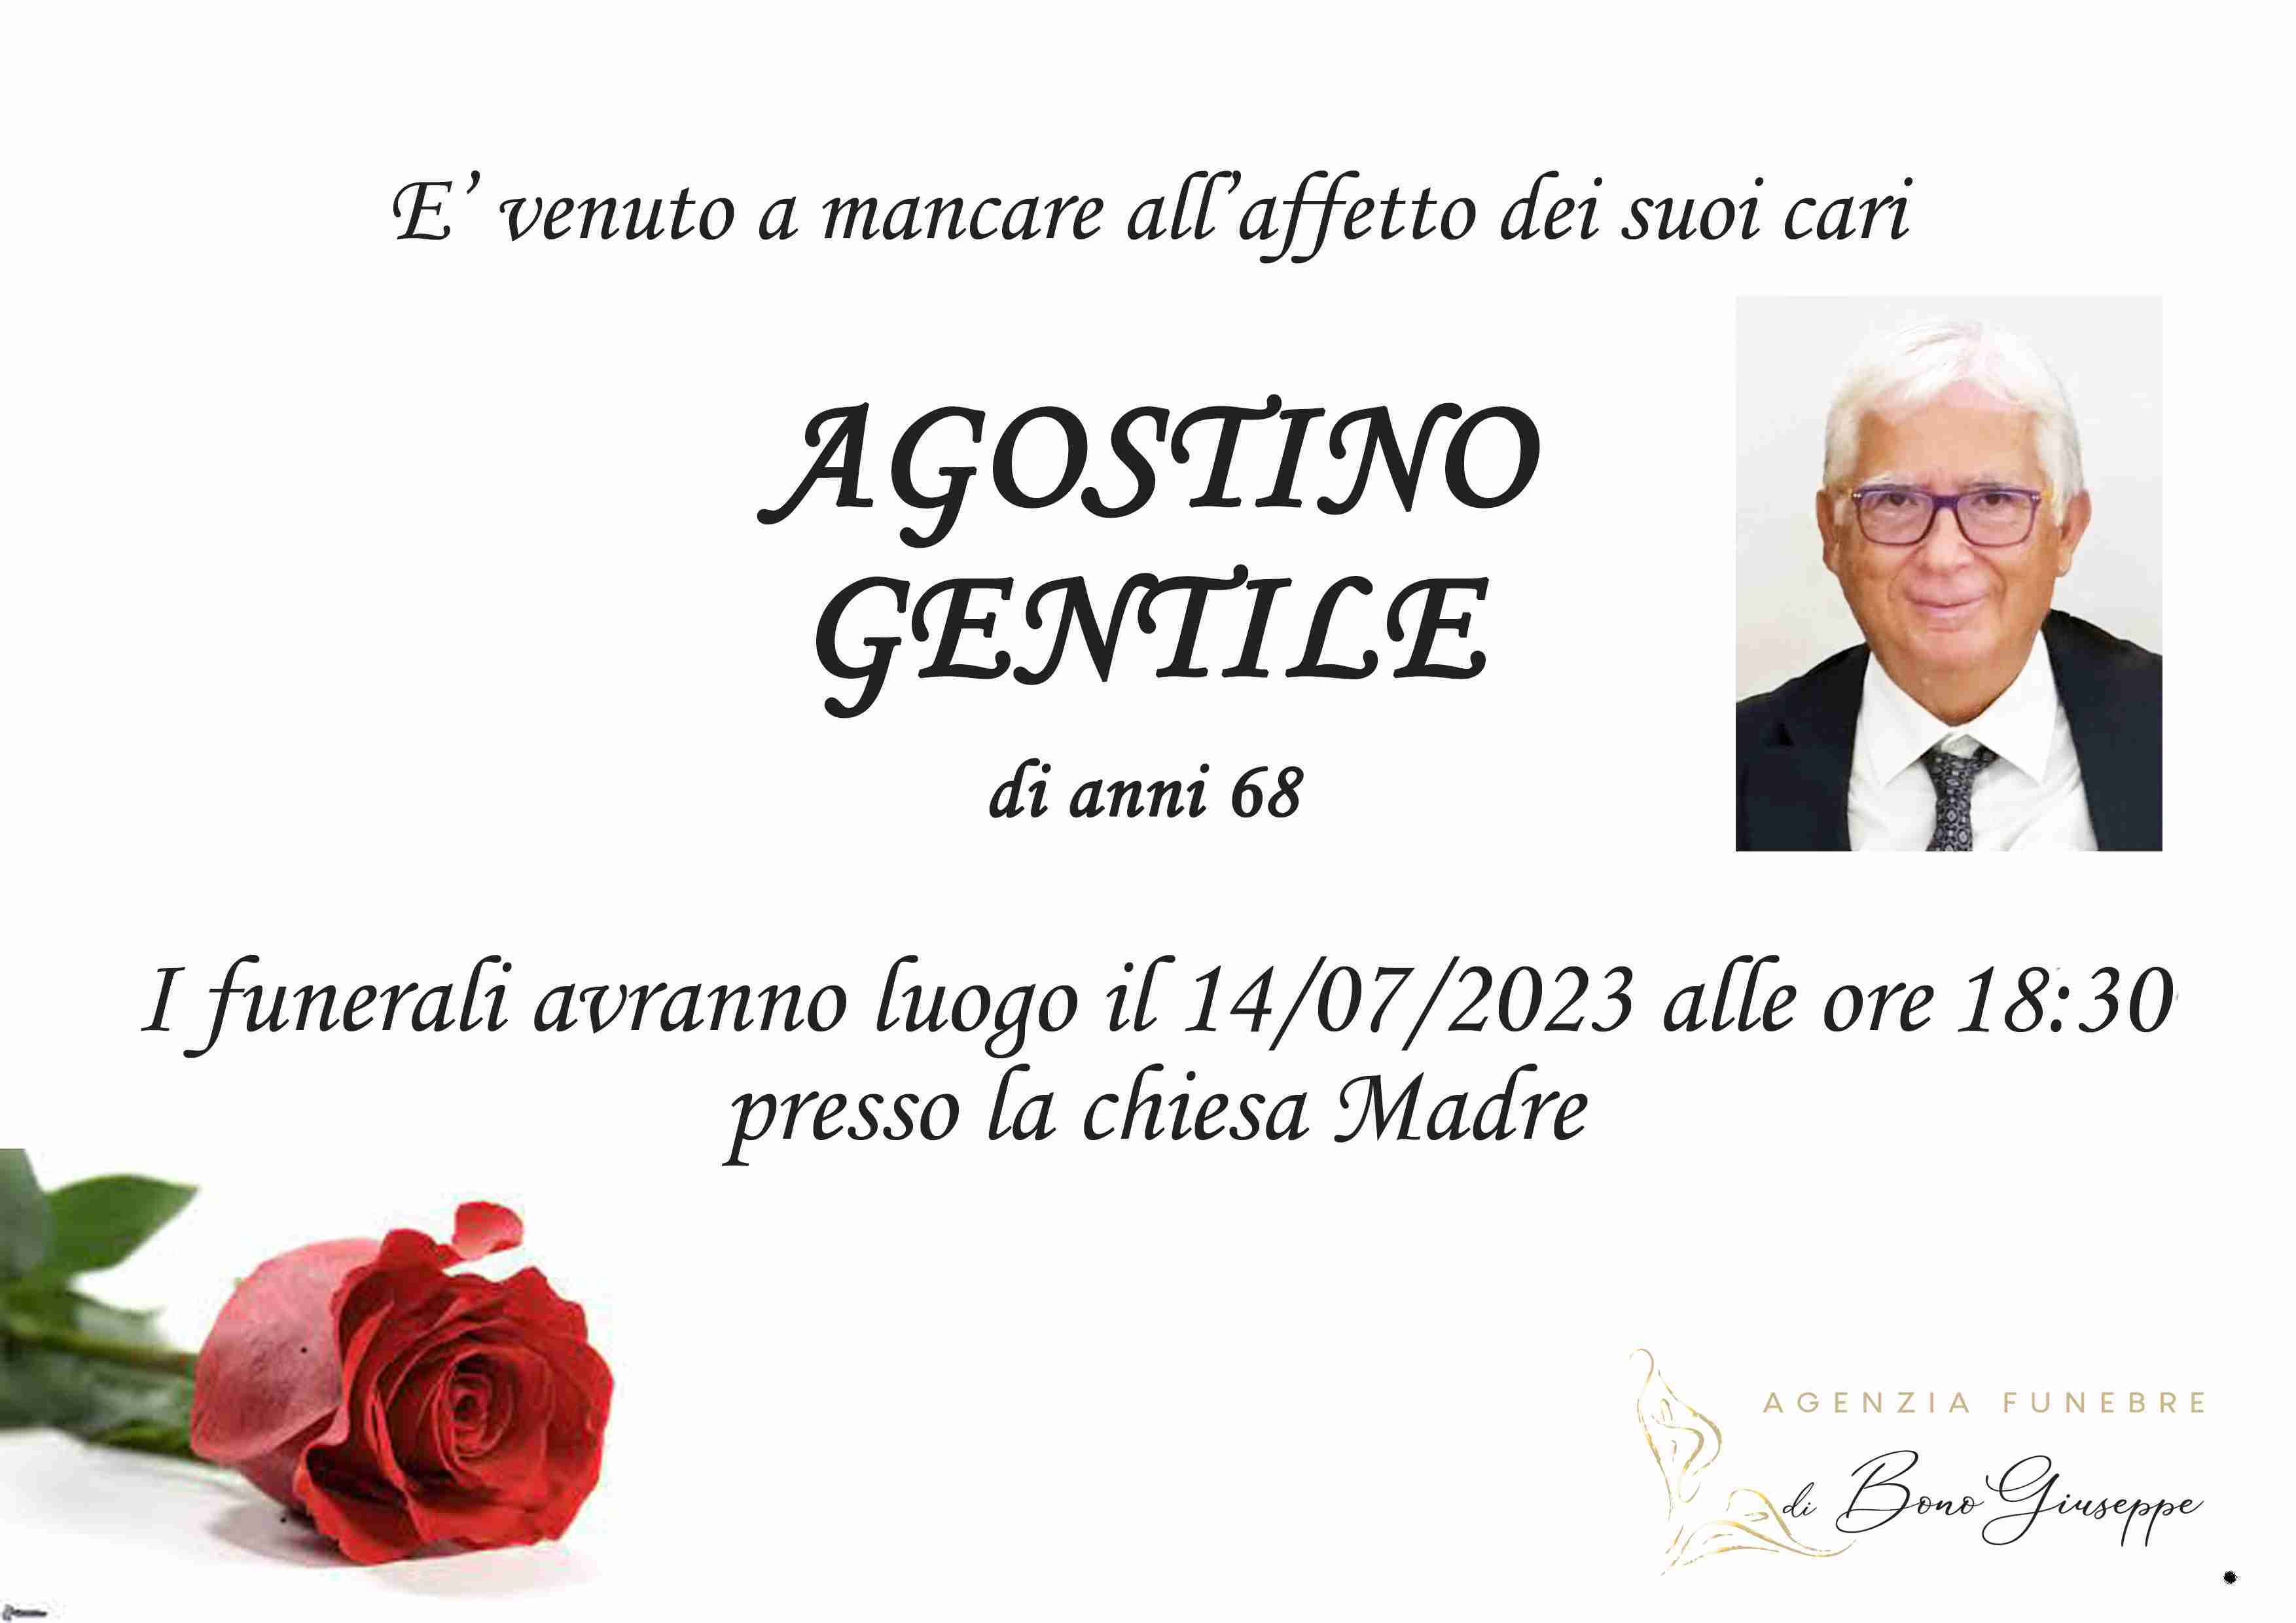 Agostino Gentile